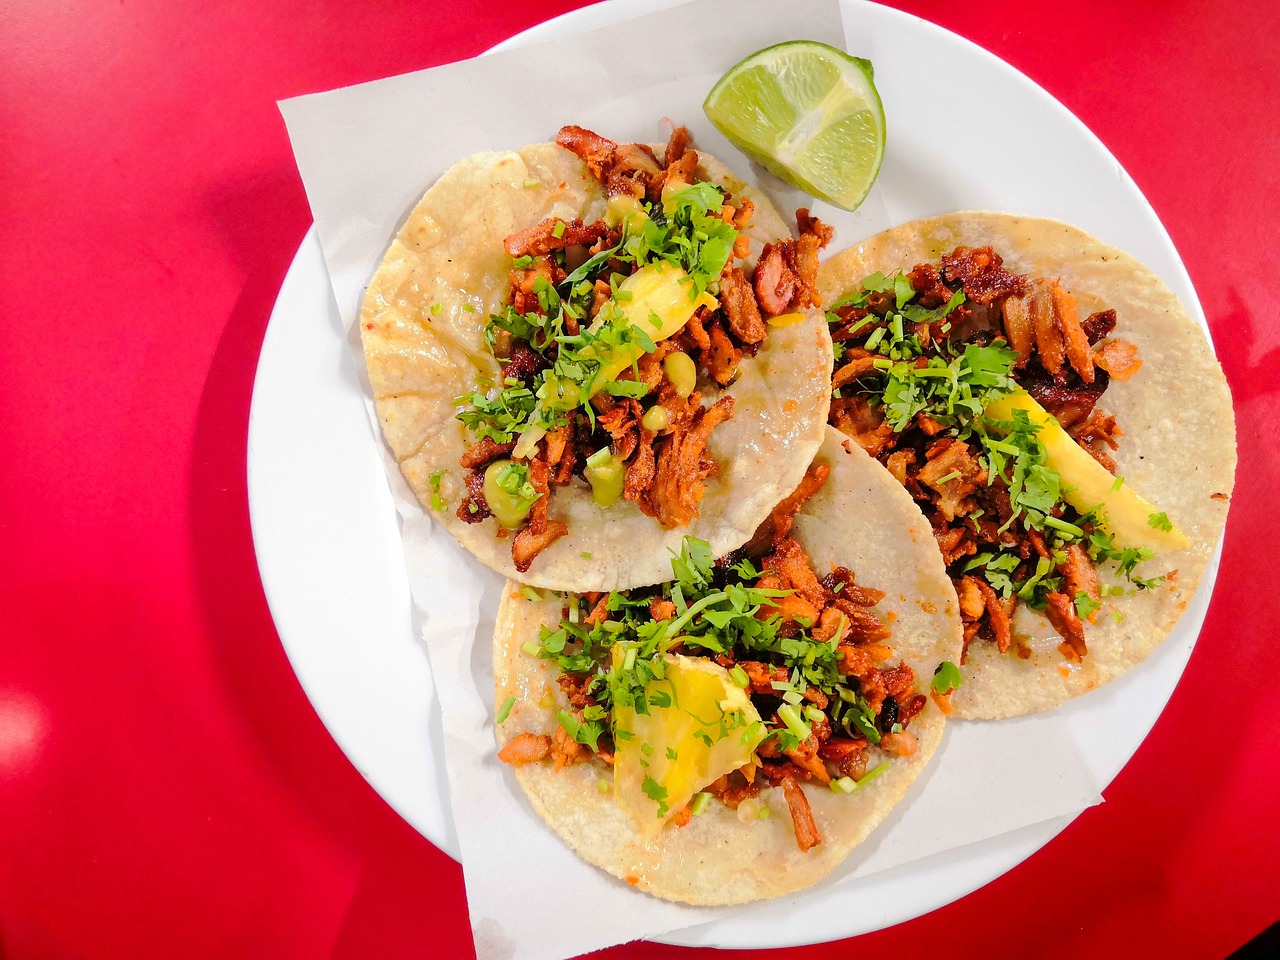 Os tacos fazem parte da comida mexicana